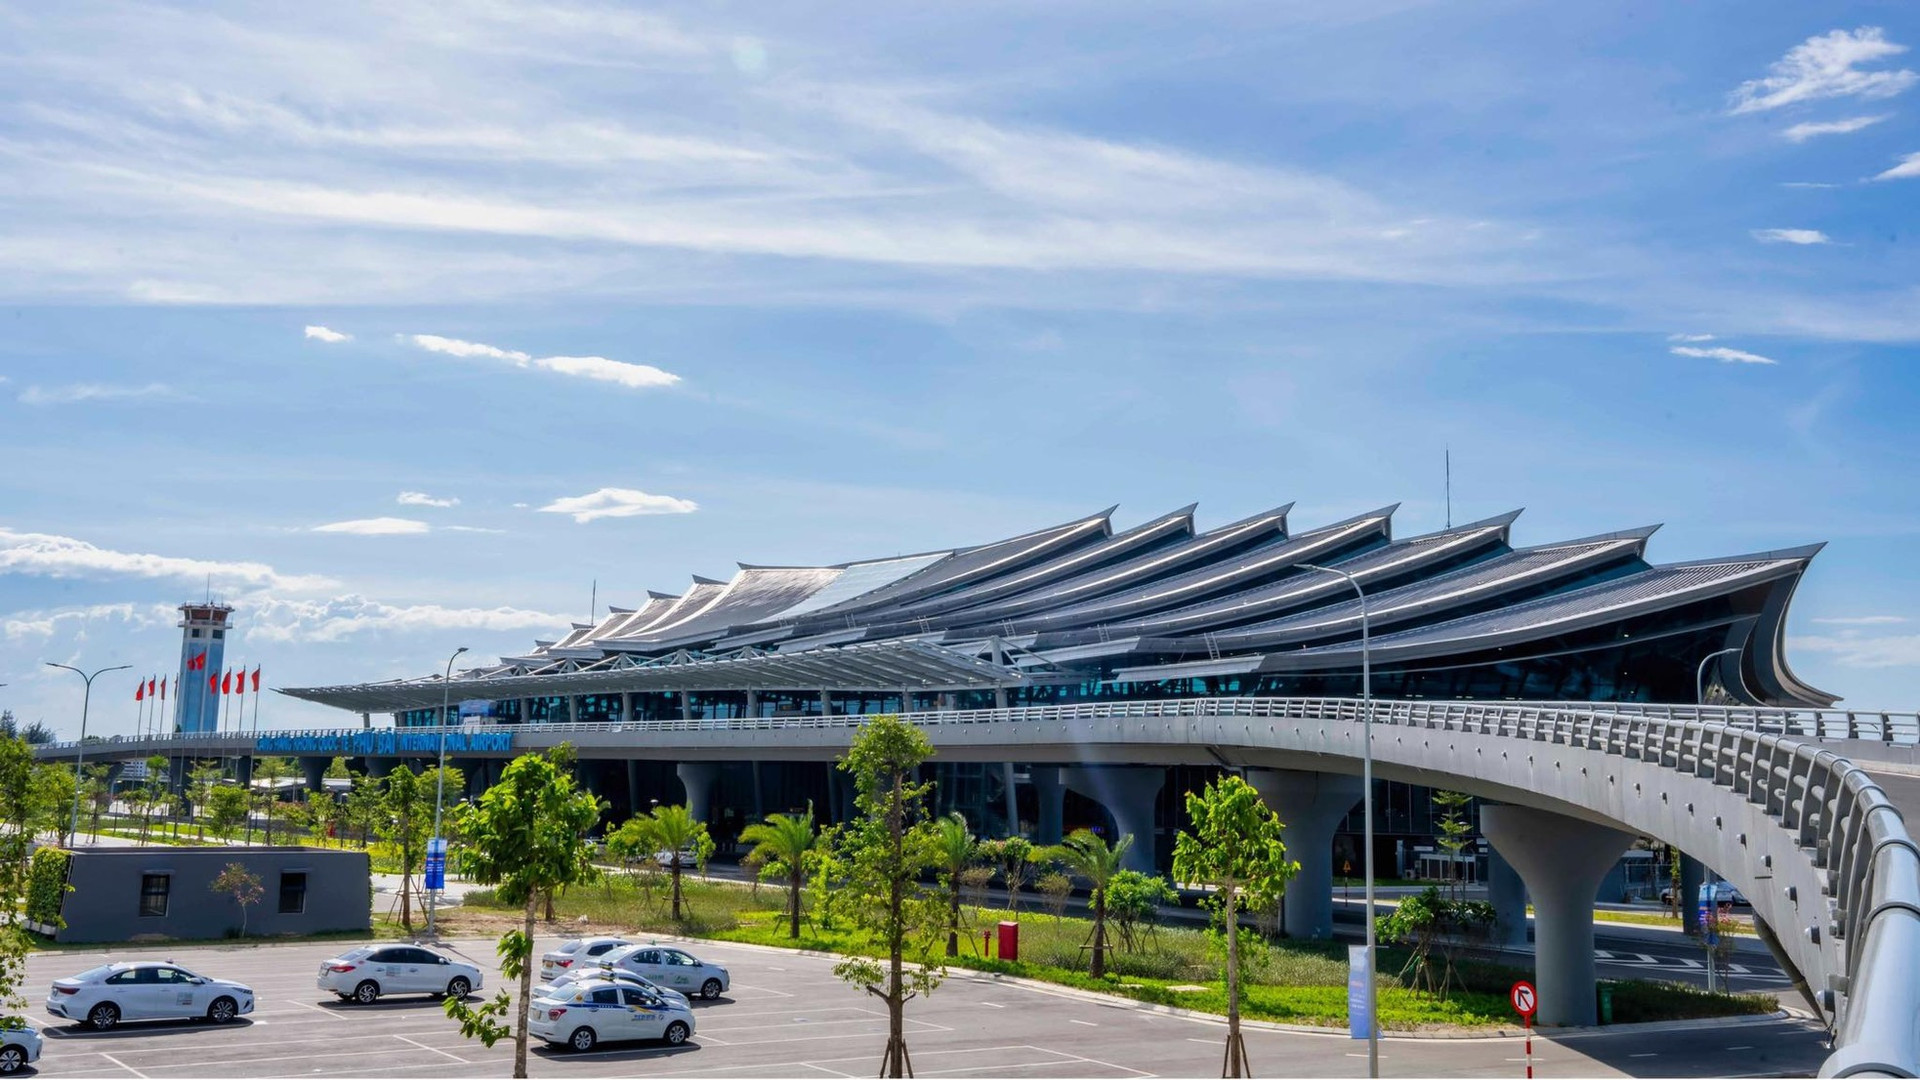 Ấn tượng hình ảnh kiến trúc sân bay 'độc nhất vô nhị' ở Việt Nam ảnh 3